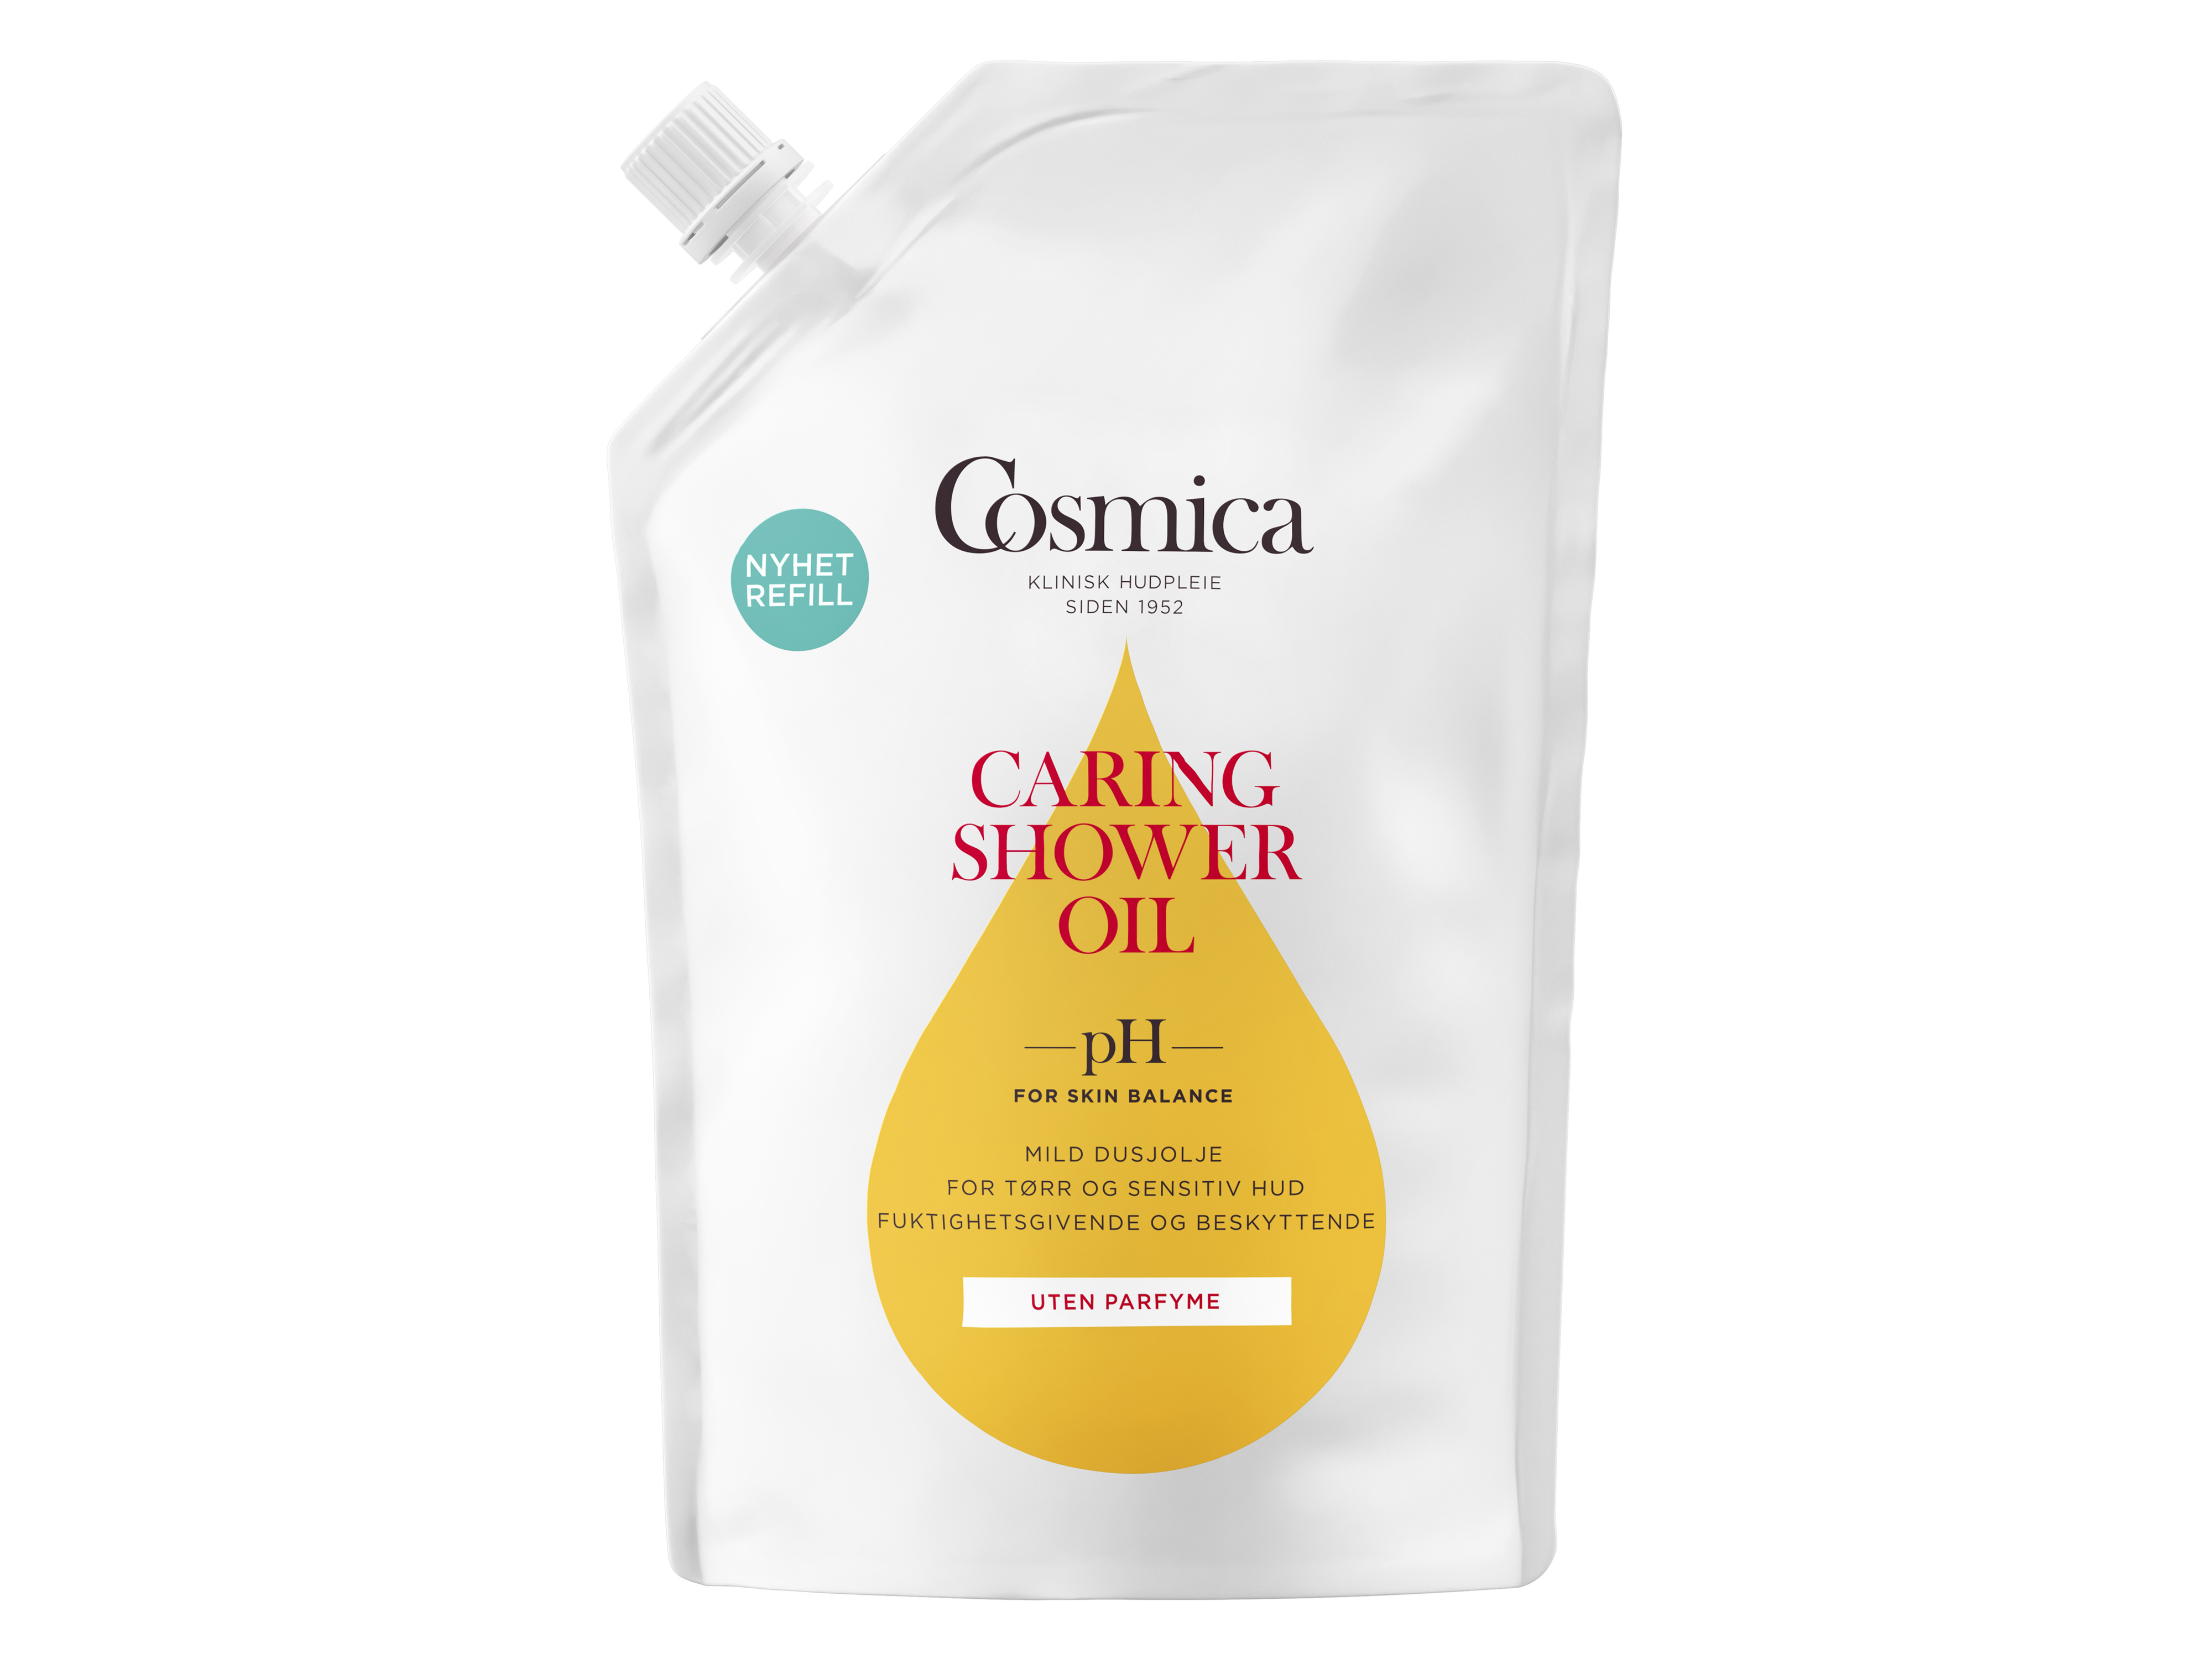 Cosmica Caring Shower Oil u/p Refill, 400 ml